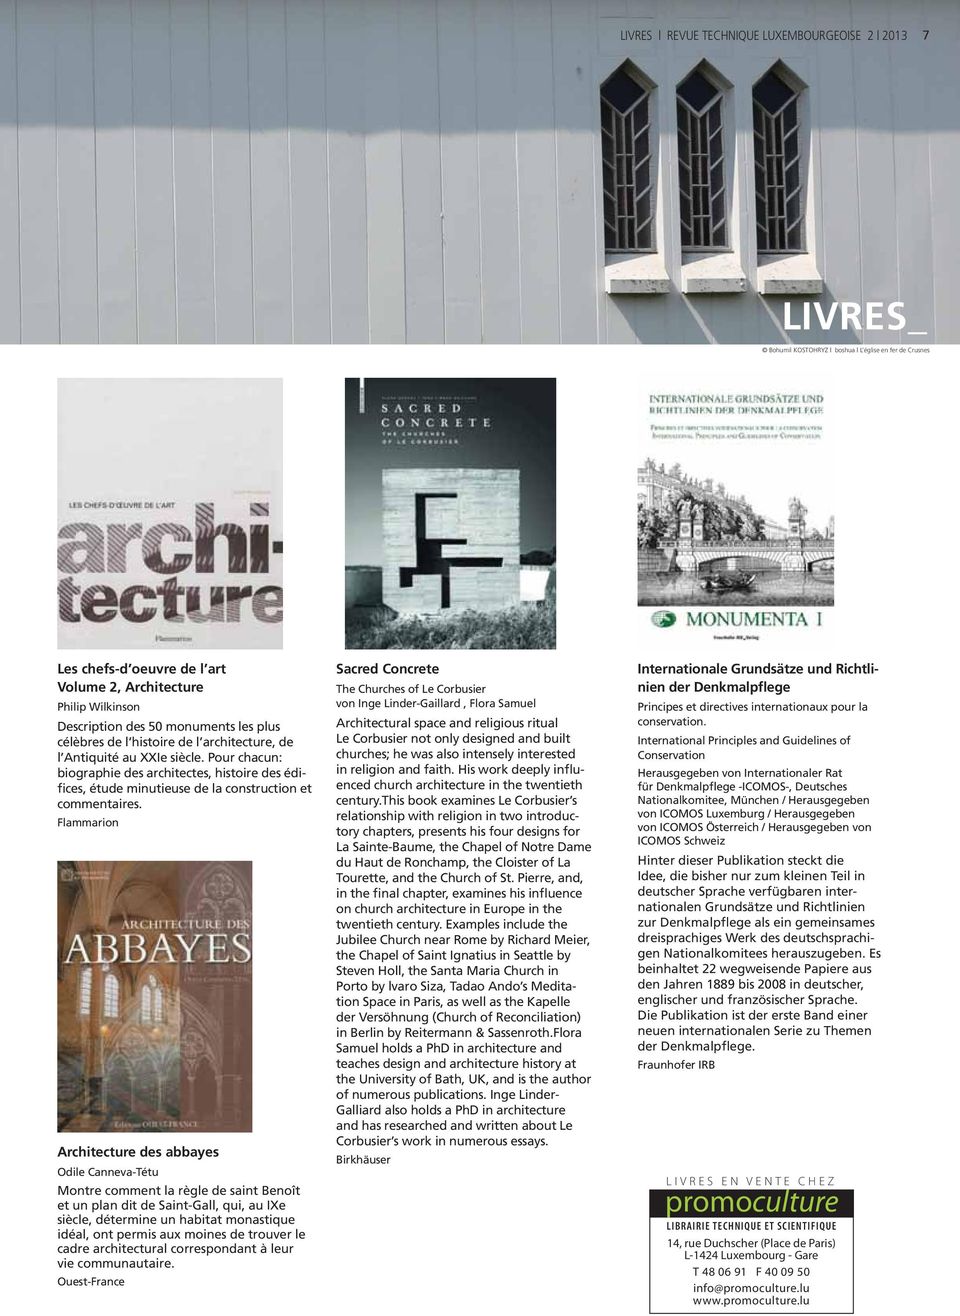 Pour chacun: biographie des architectes, histoire des édifices, étude minutieuse de la construction et commentaires.